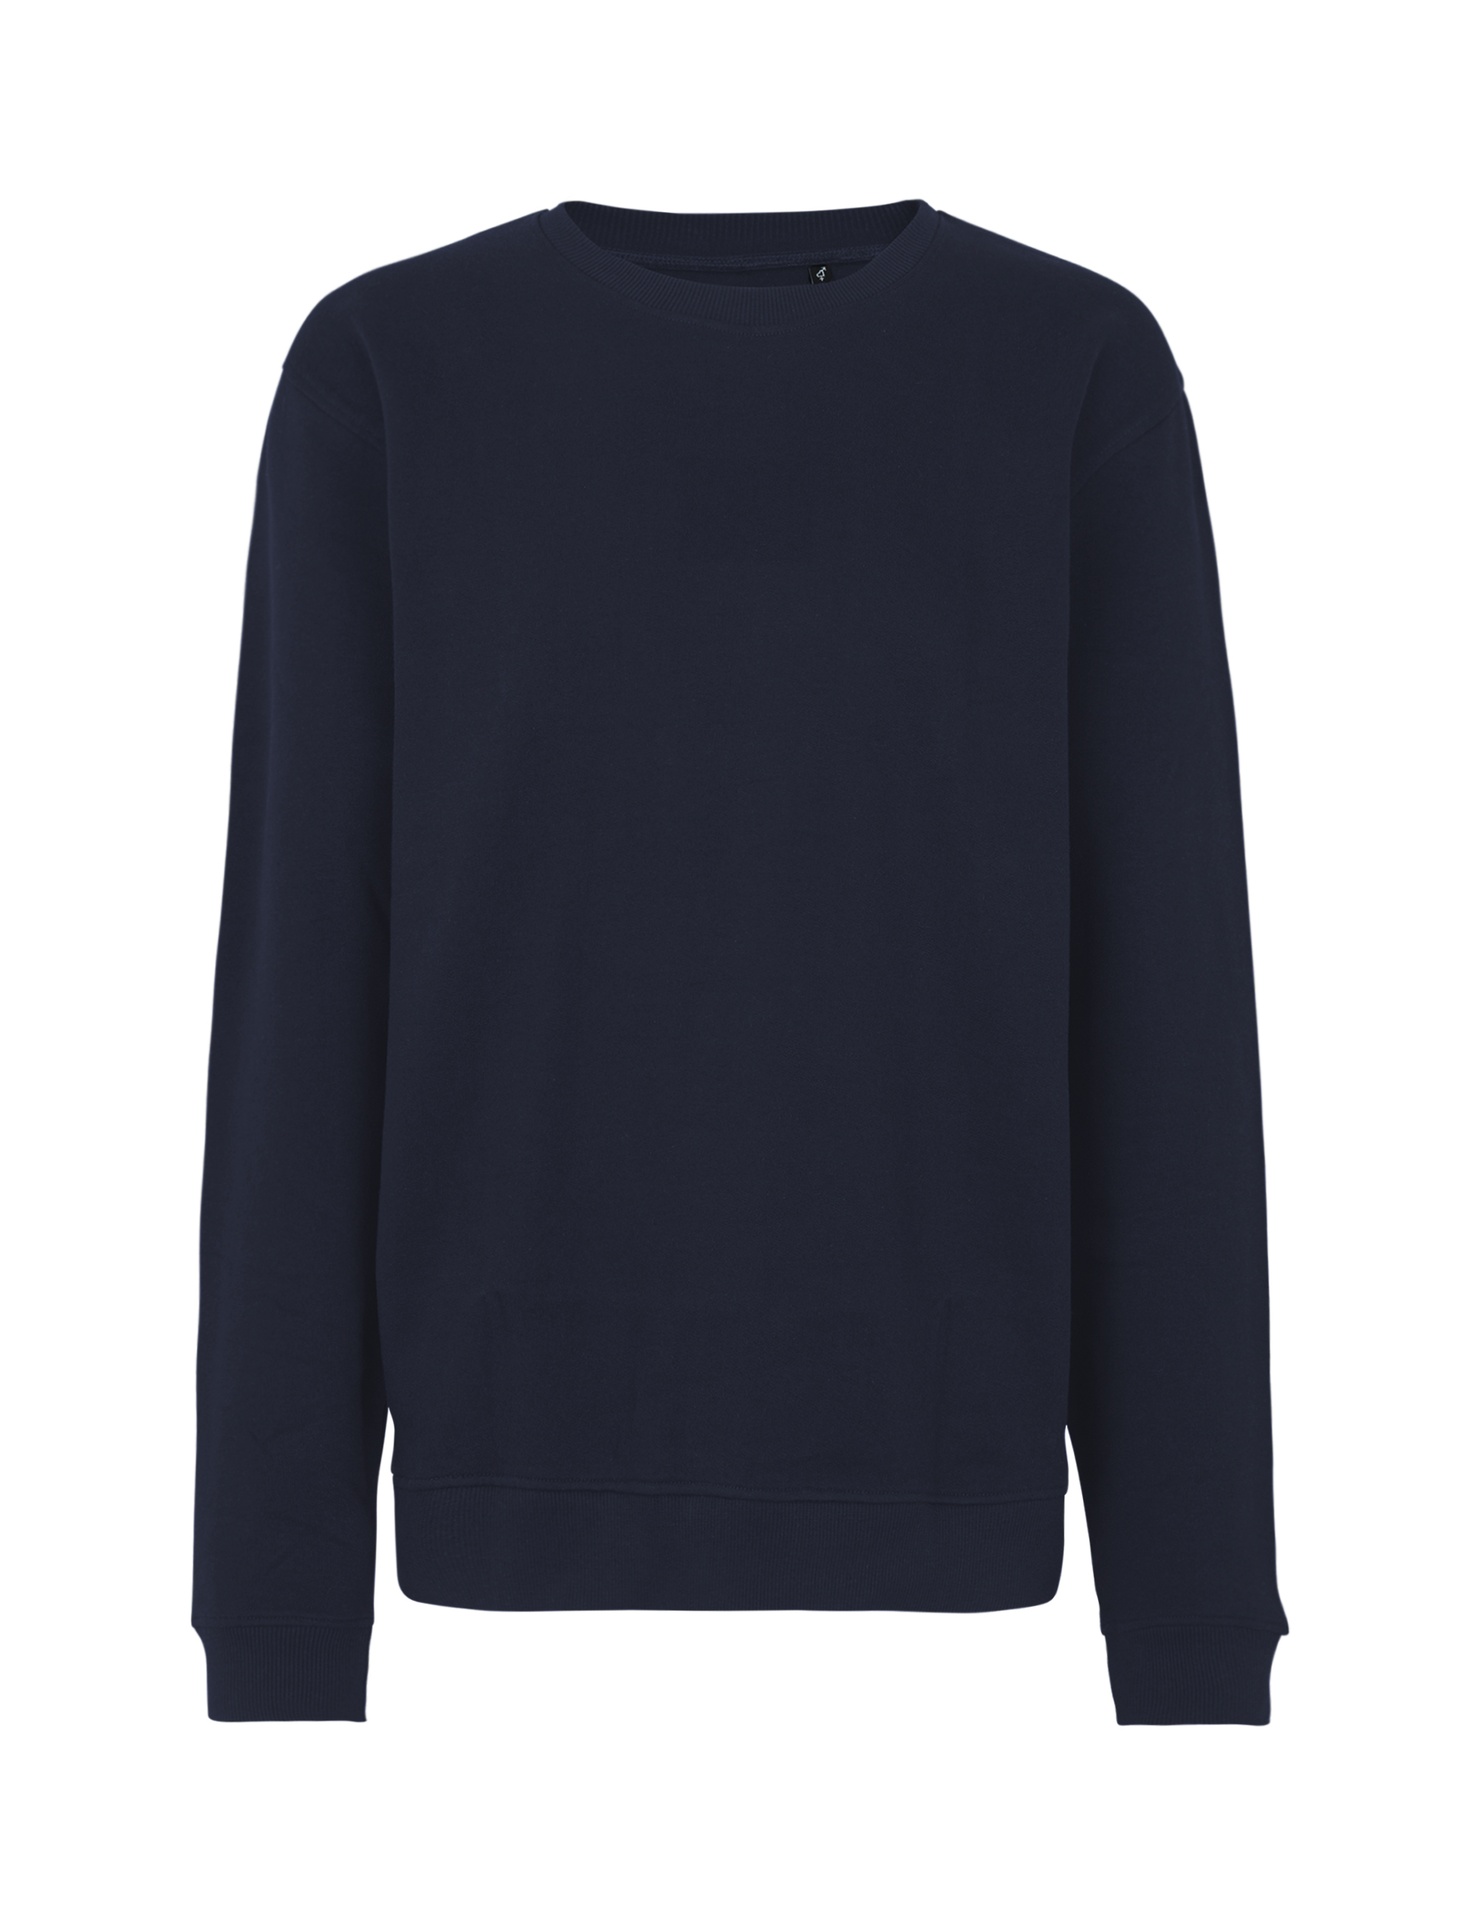 [PR/03533] Unisex Workwear Sweatshirt (Navy 04, L)